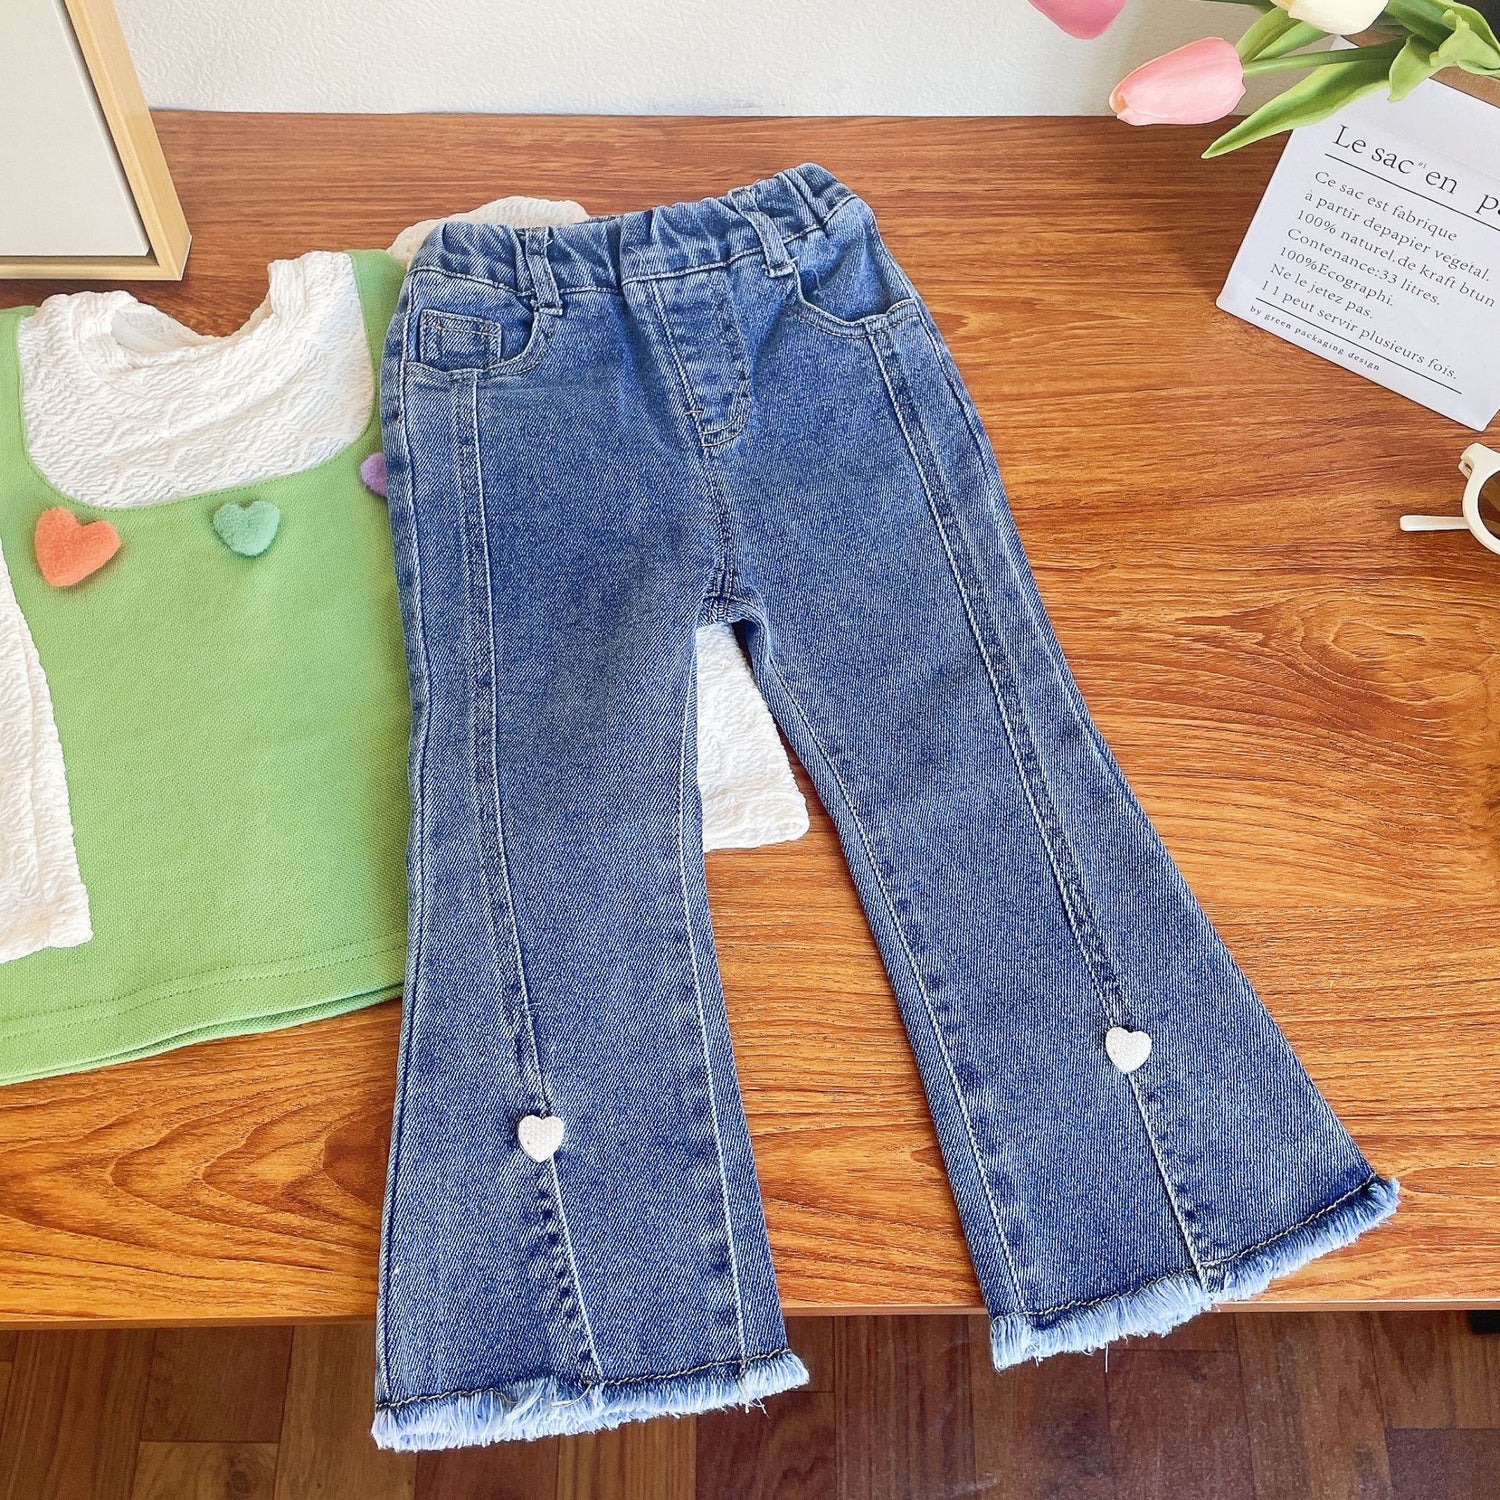 [363597] - Setelan Blouse Celana Panjang Jeans Rawis Import Anak Perempuan - Motif Smooth Heart